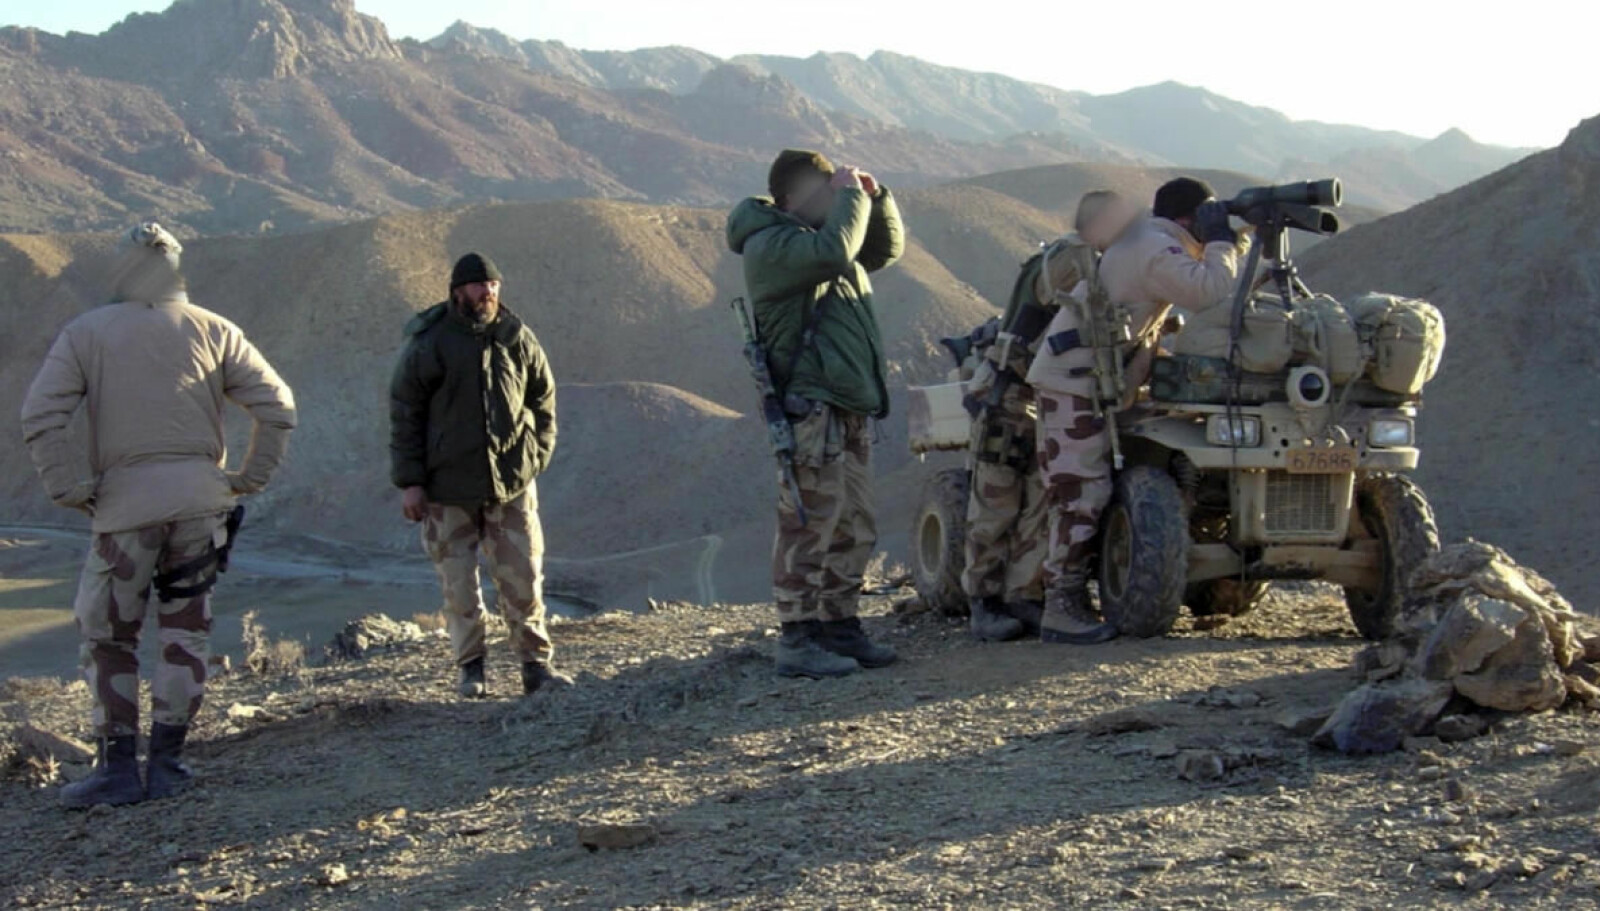 <b>BAKHOLD?:</b> Marinejegerne studerer terrenget inngående etter mulige bakhold langs veien nord i Helmand-provinsen høsten 2005.